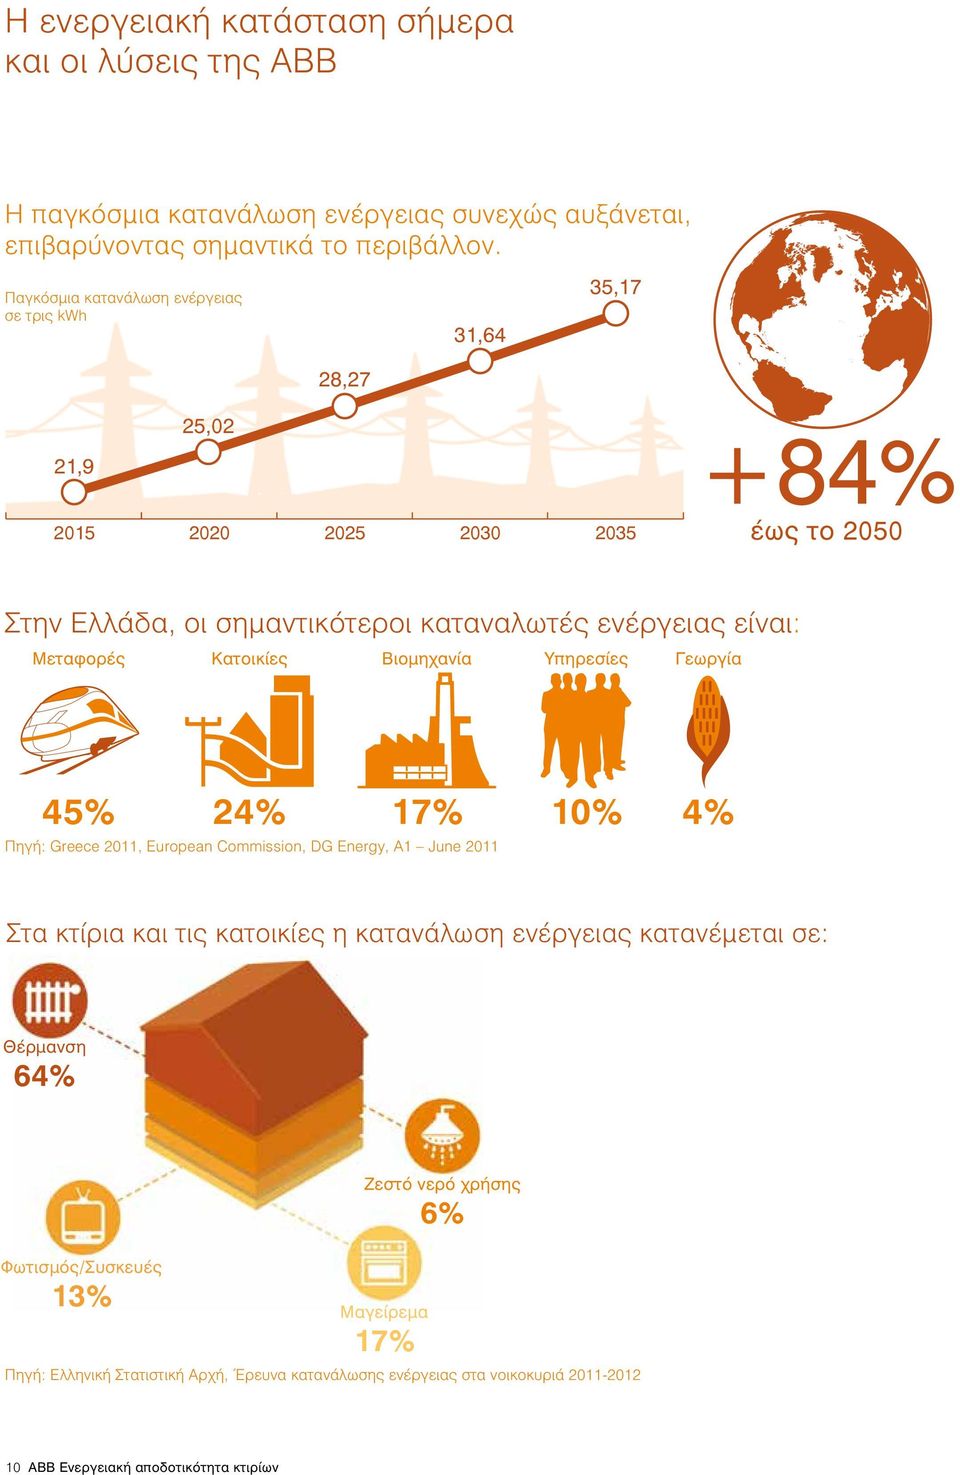 Μεταφορές Κατοικίες Βιομηχανία Υπηρεσίες Γεωργία 45% 24% 17% Πηγή: Greece 2011, European Commission, DG Energy, A1 June 2011 10% 4% Στα κτίρια και τις κατοικίες η κατανάλωση